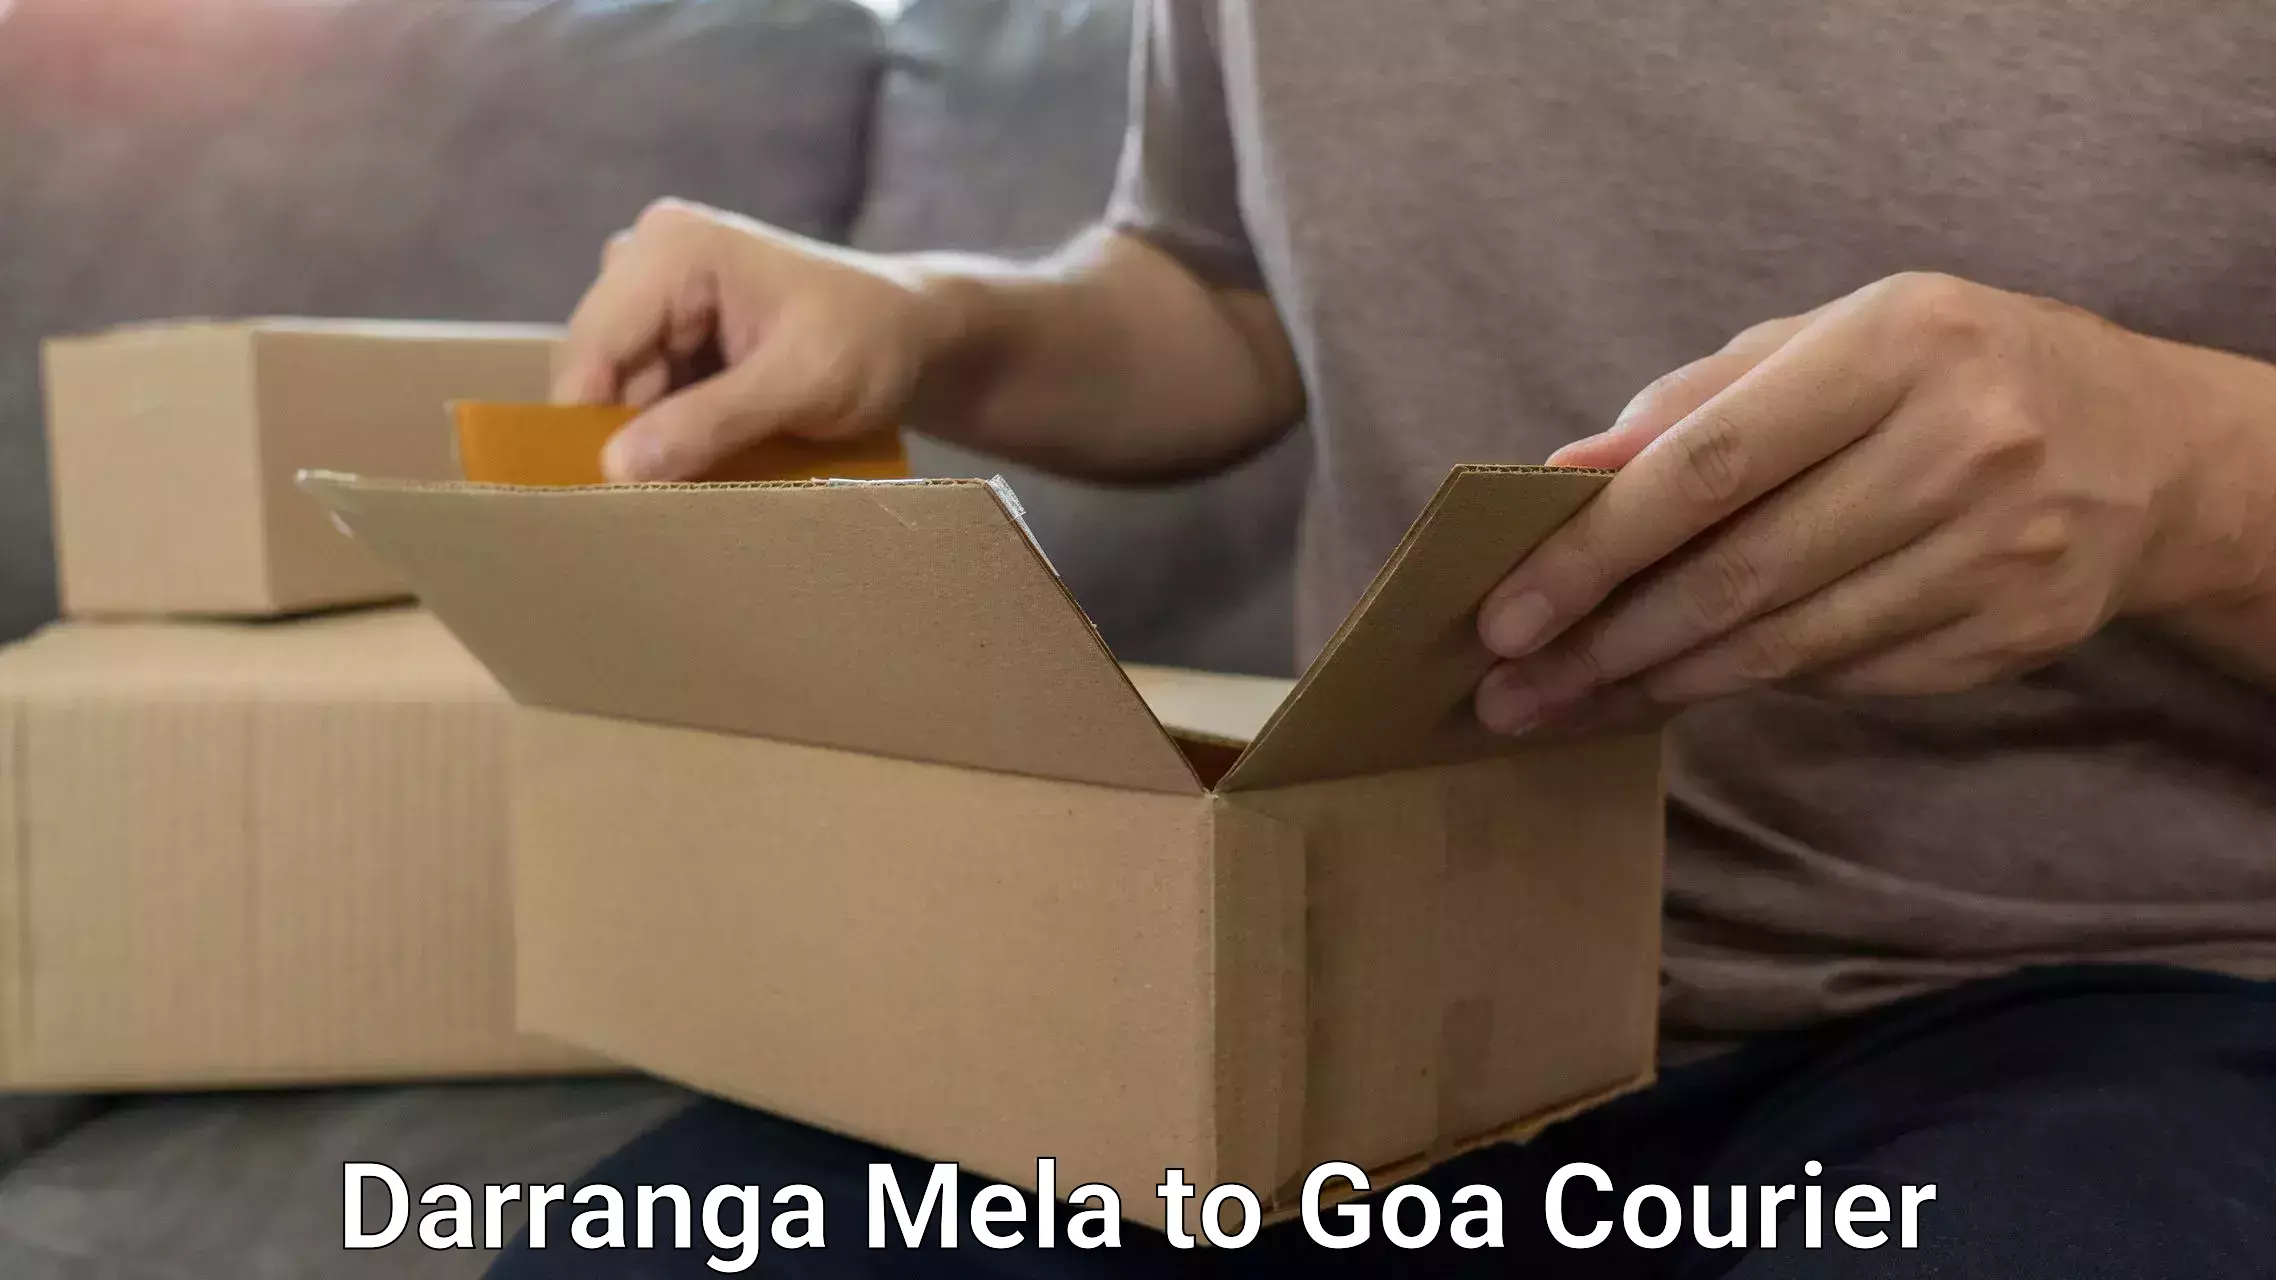 Luggage shipping rates calculator Darranga Mela to Goa University